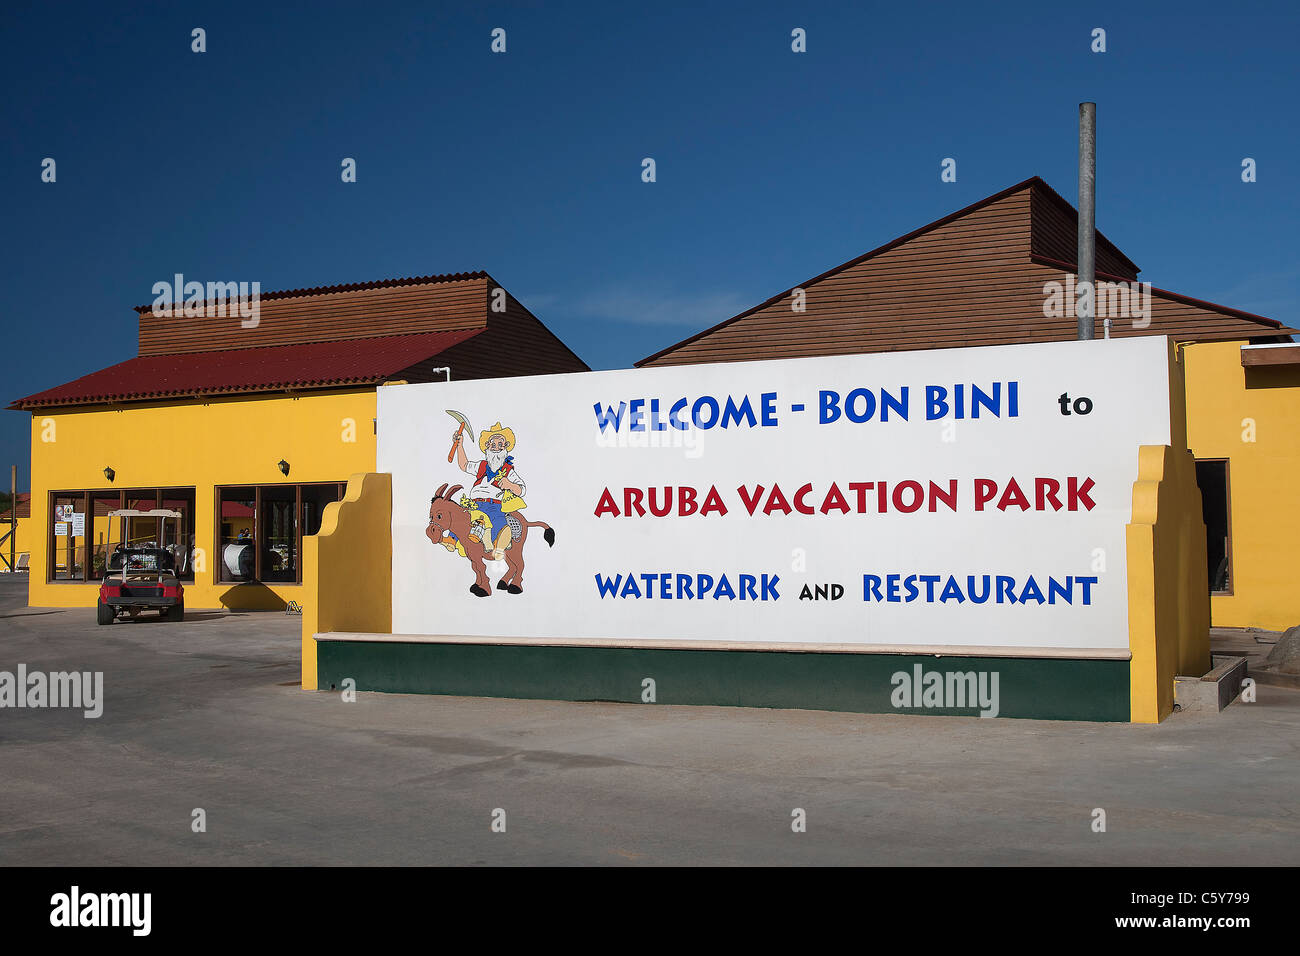 Waterpark et restaurant au parc de vacances Aruba (Botte de résidence), Hooiberg, près de Santa Cruz, Aruba, Antilles néerlandaises Banque D'Images